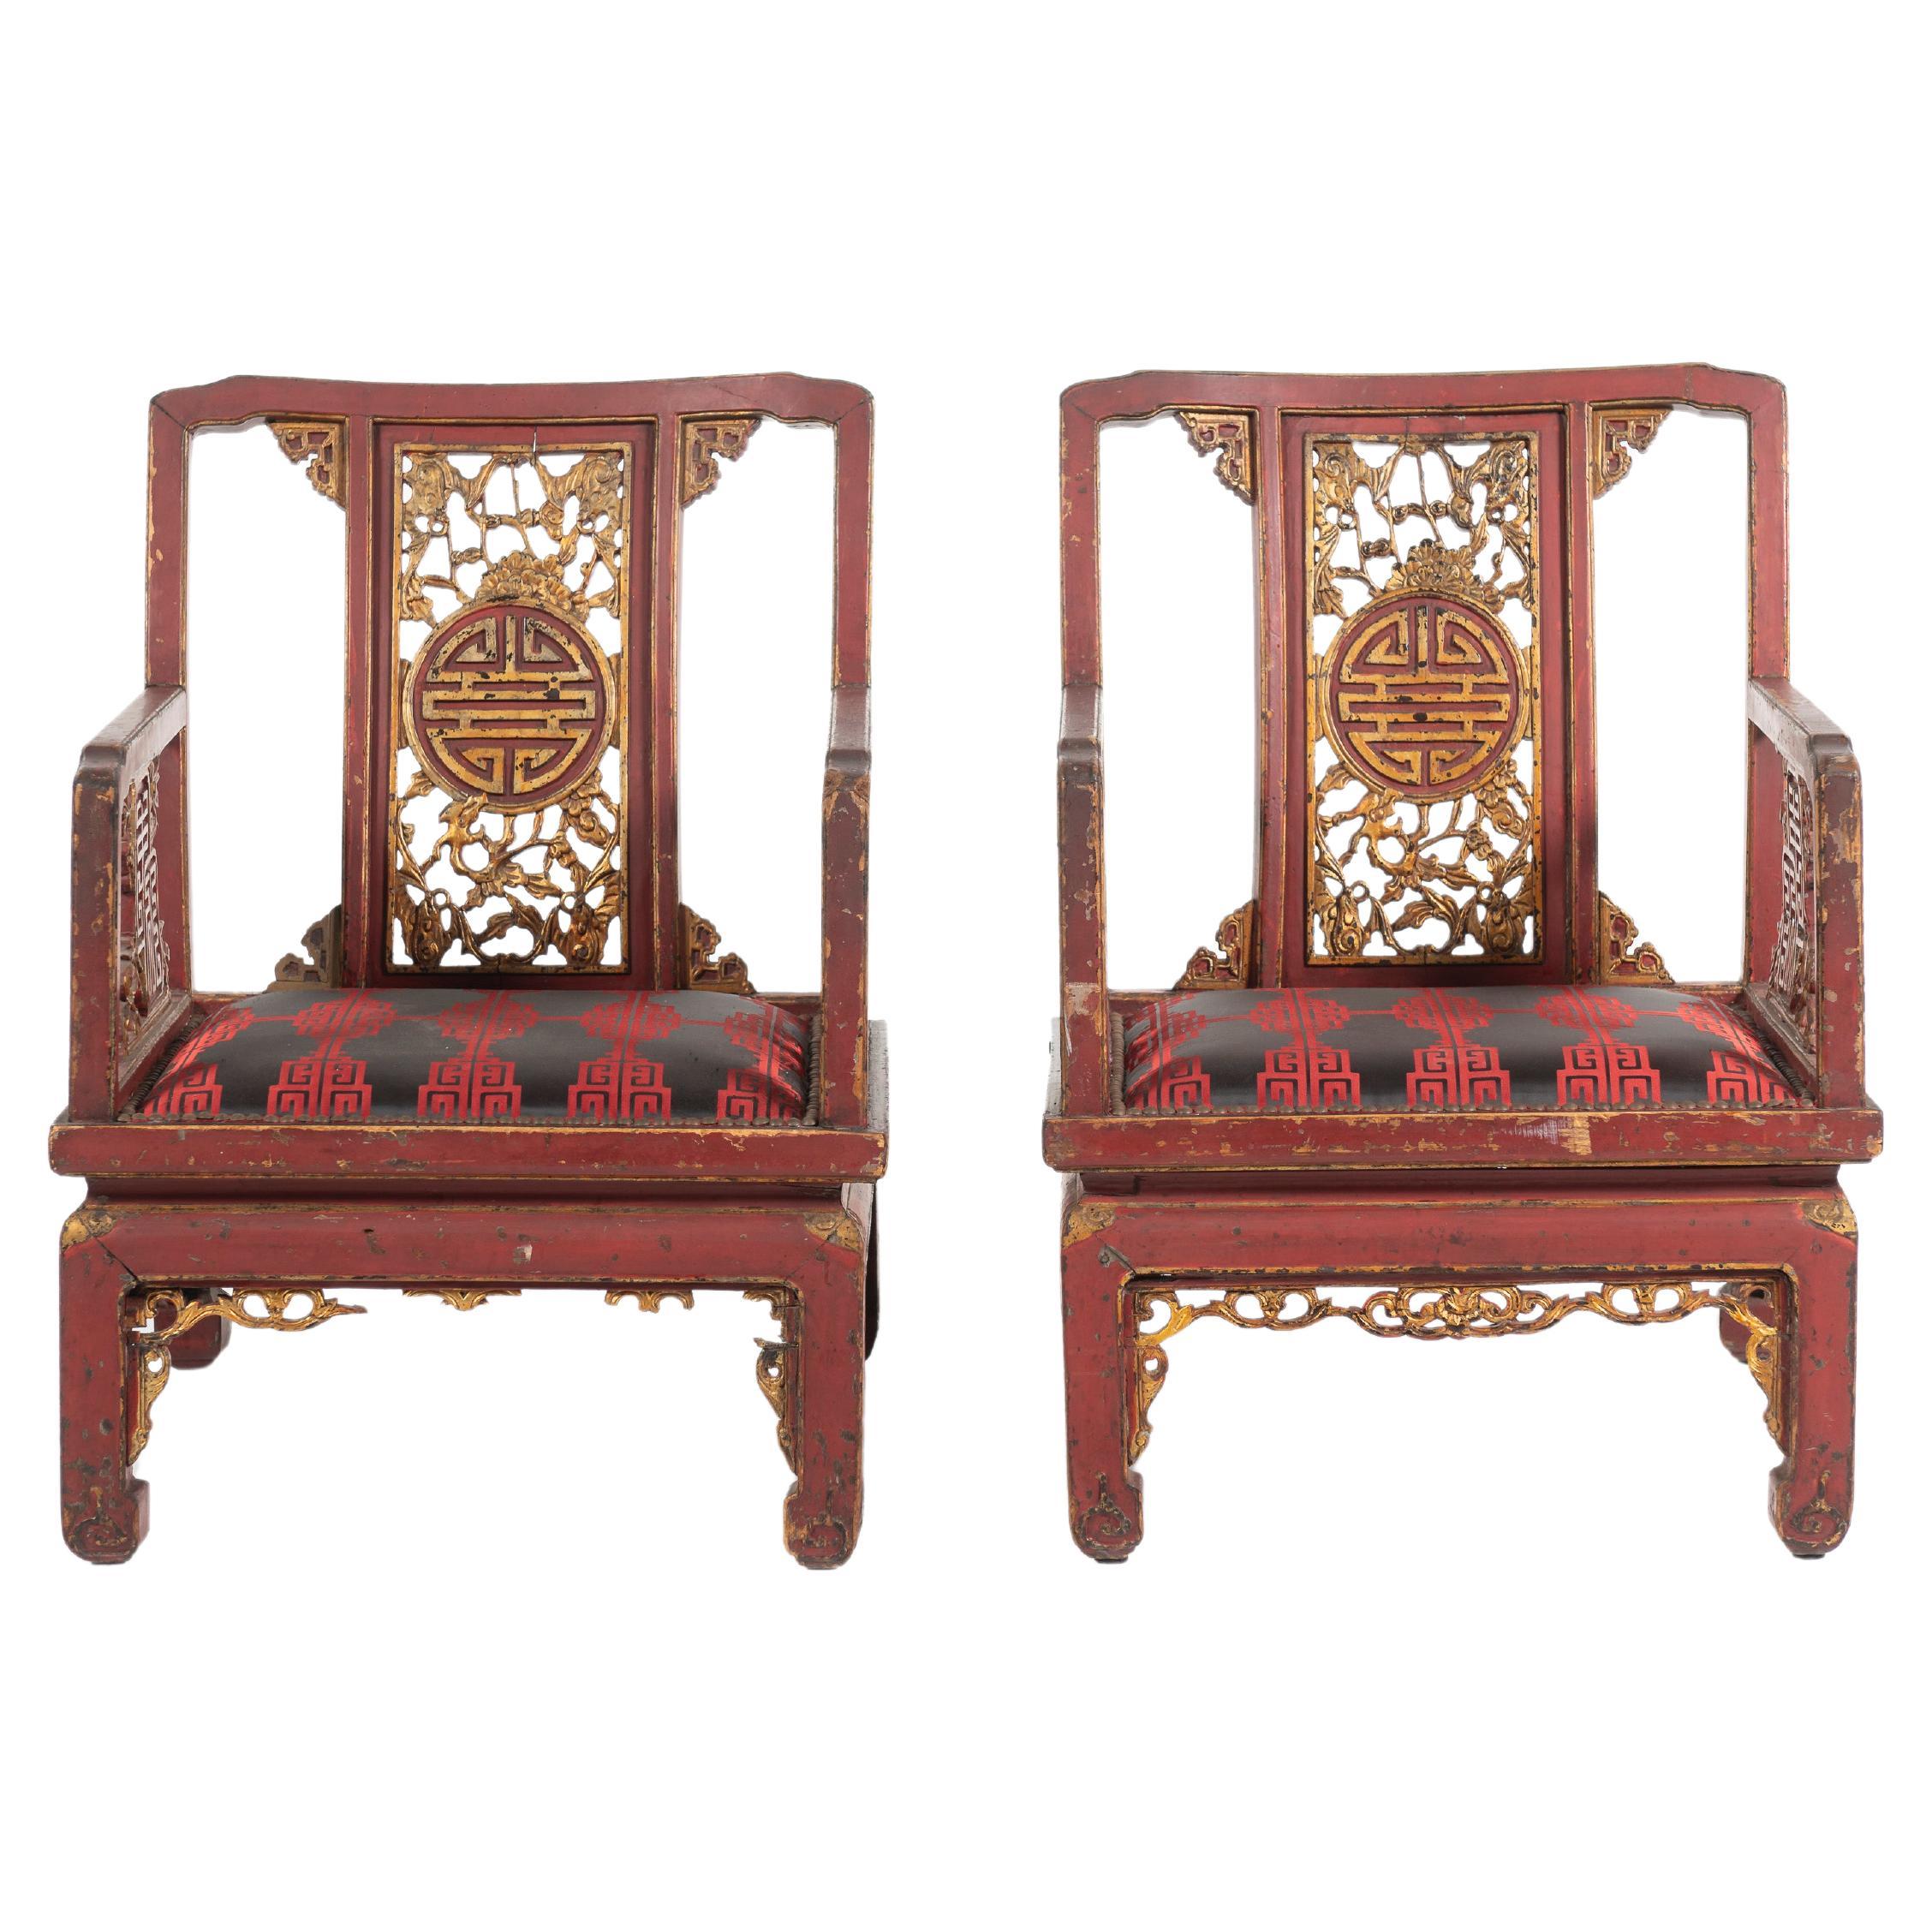 Ein Paar antiker französischer Chinoiserie-Sessel aus dem späten 19. Diese großen Stühle sind in chinesischem Rot lackiert und mit Gold auf den traditionellen Laubsägearbeiten verziert. Die Stühle sind mit schwarzen und roten Seidenpads ausgestattet